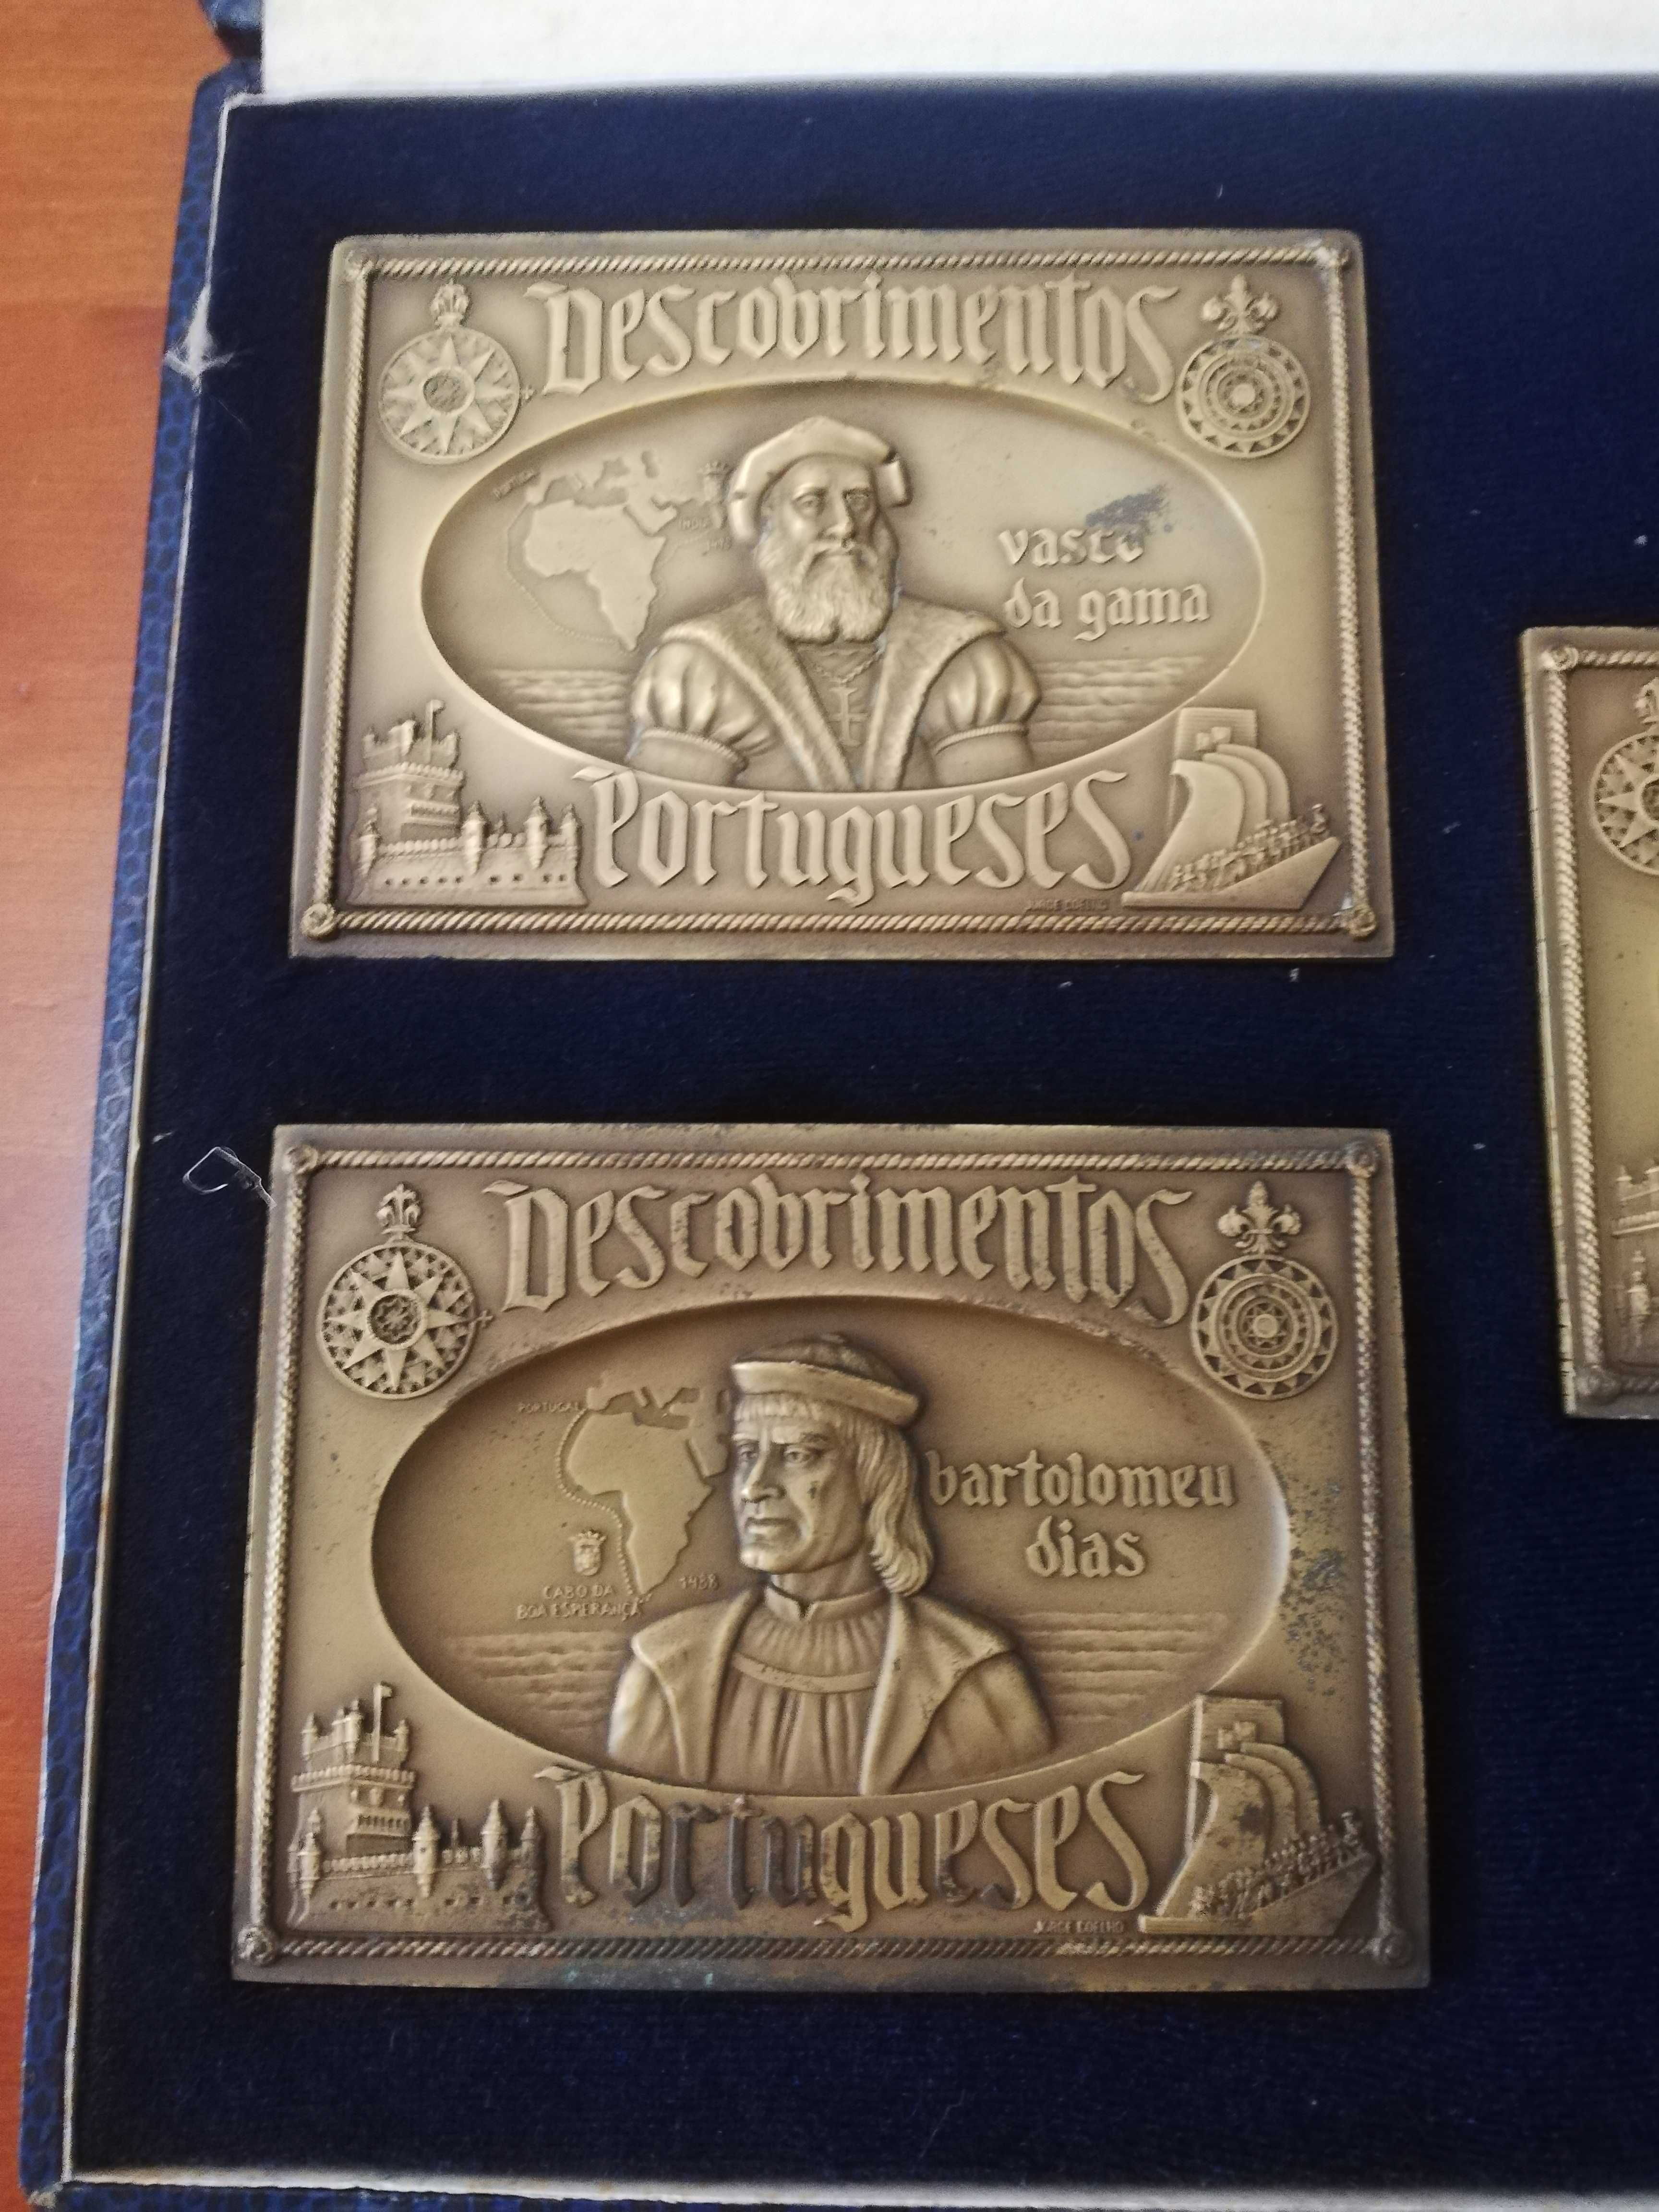 Coleção de Medalhas - 500 anos dos Descobrimentos